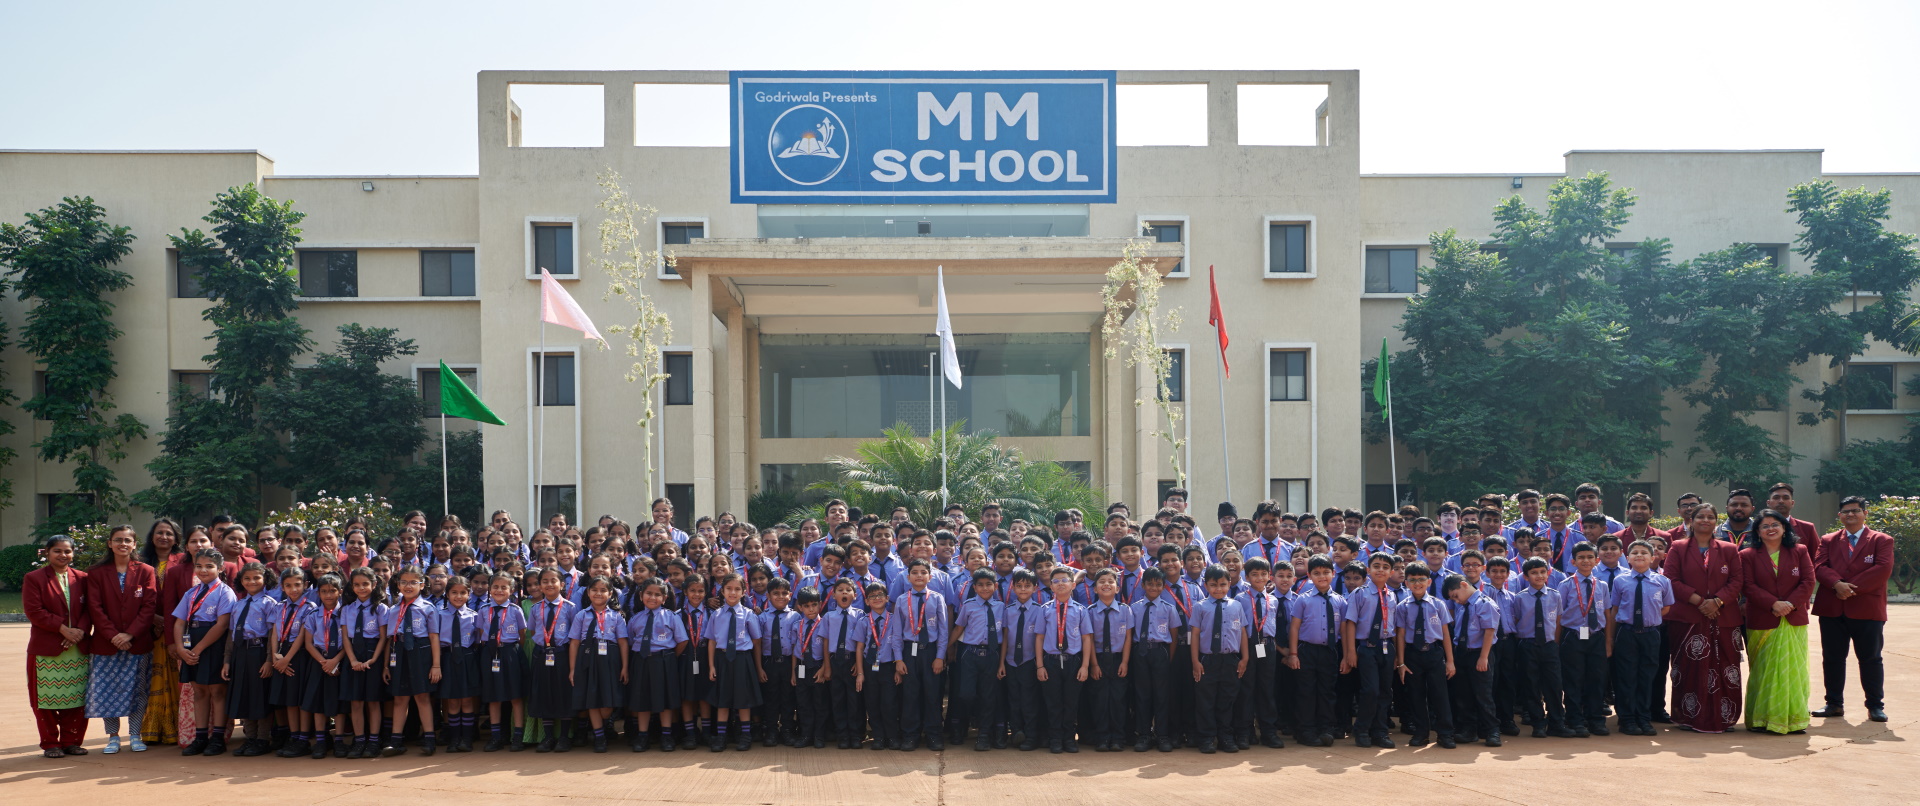 MM School